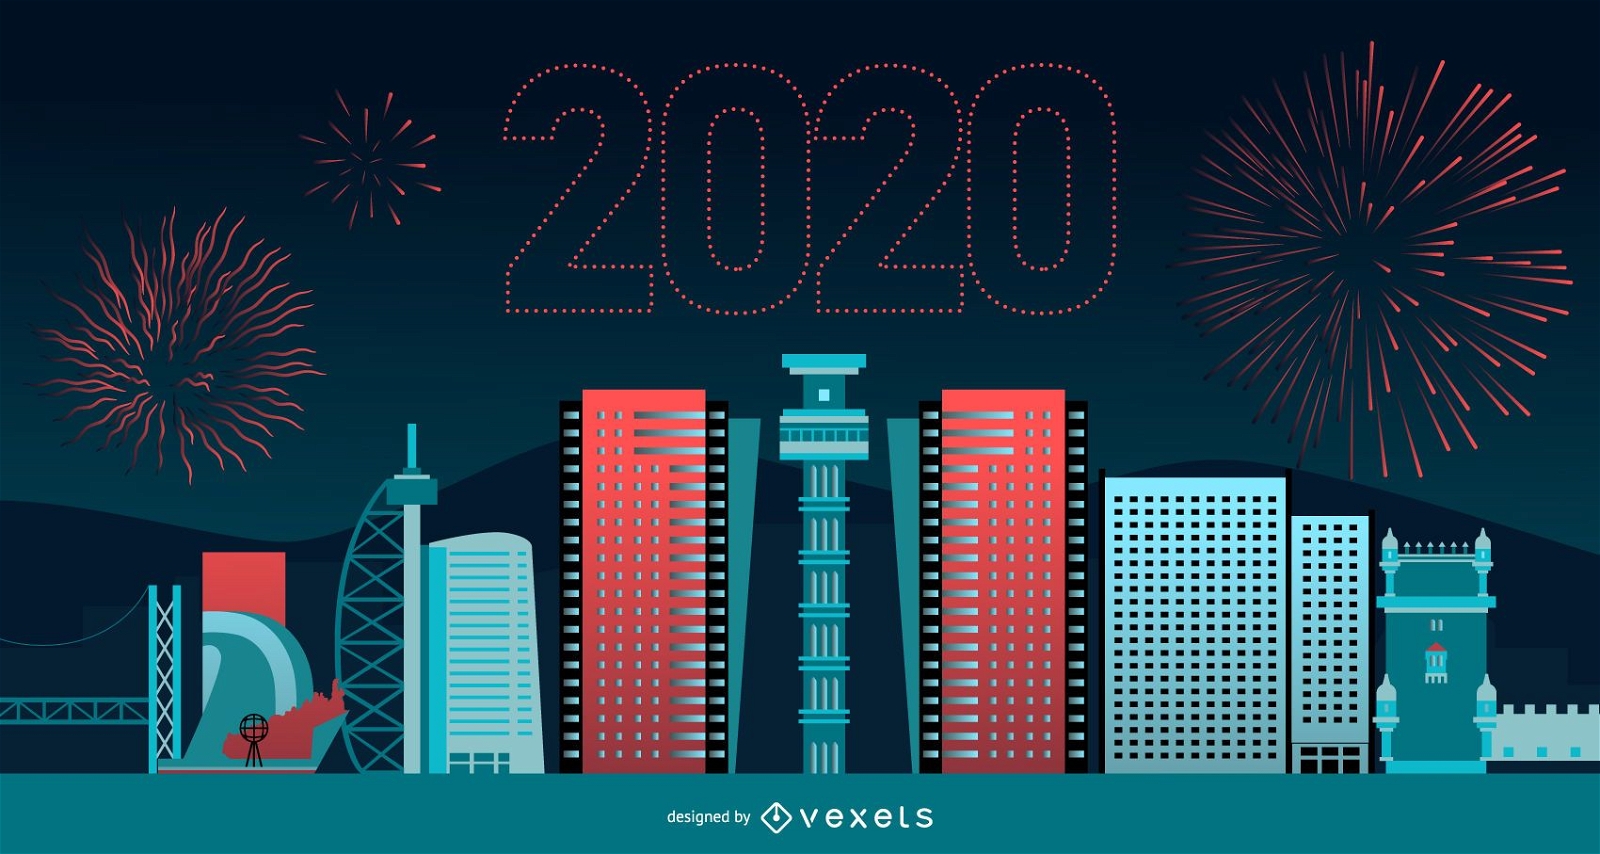 Feliz 2020 dise?o de banner de horizonte de Lisboa